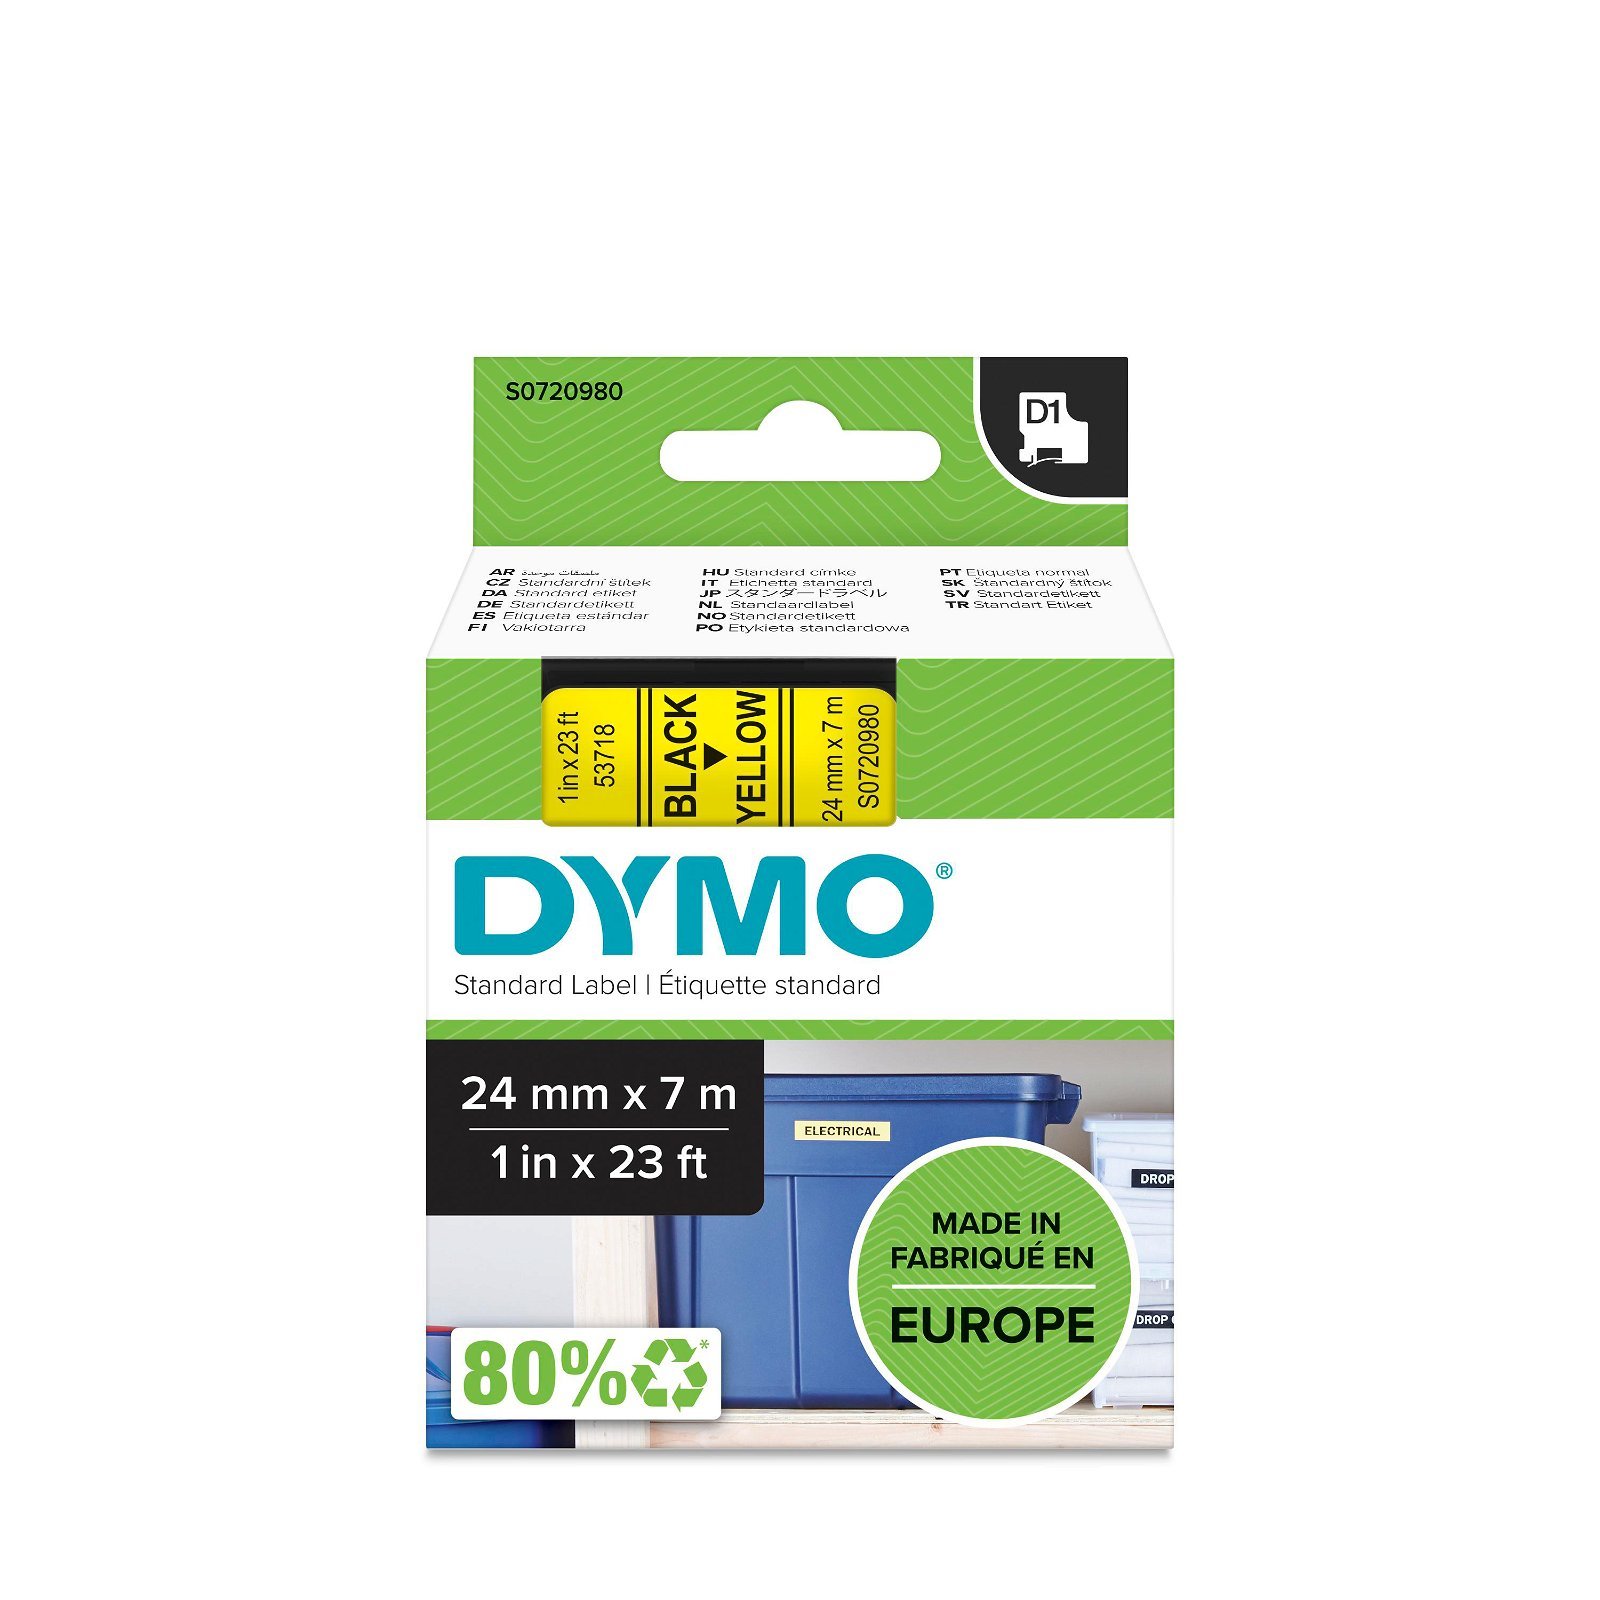 Dymo D1 standard tapekasette 24 mm sort;gul Polyester